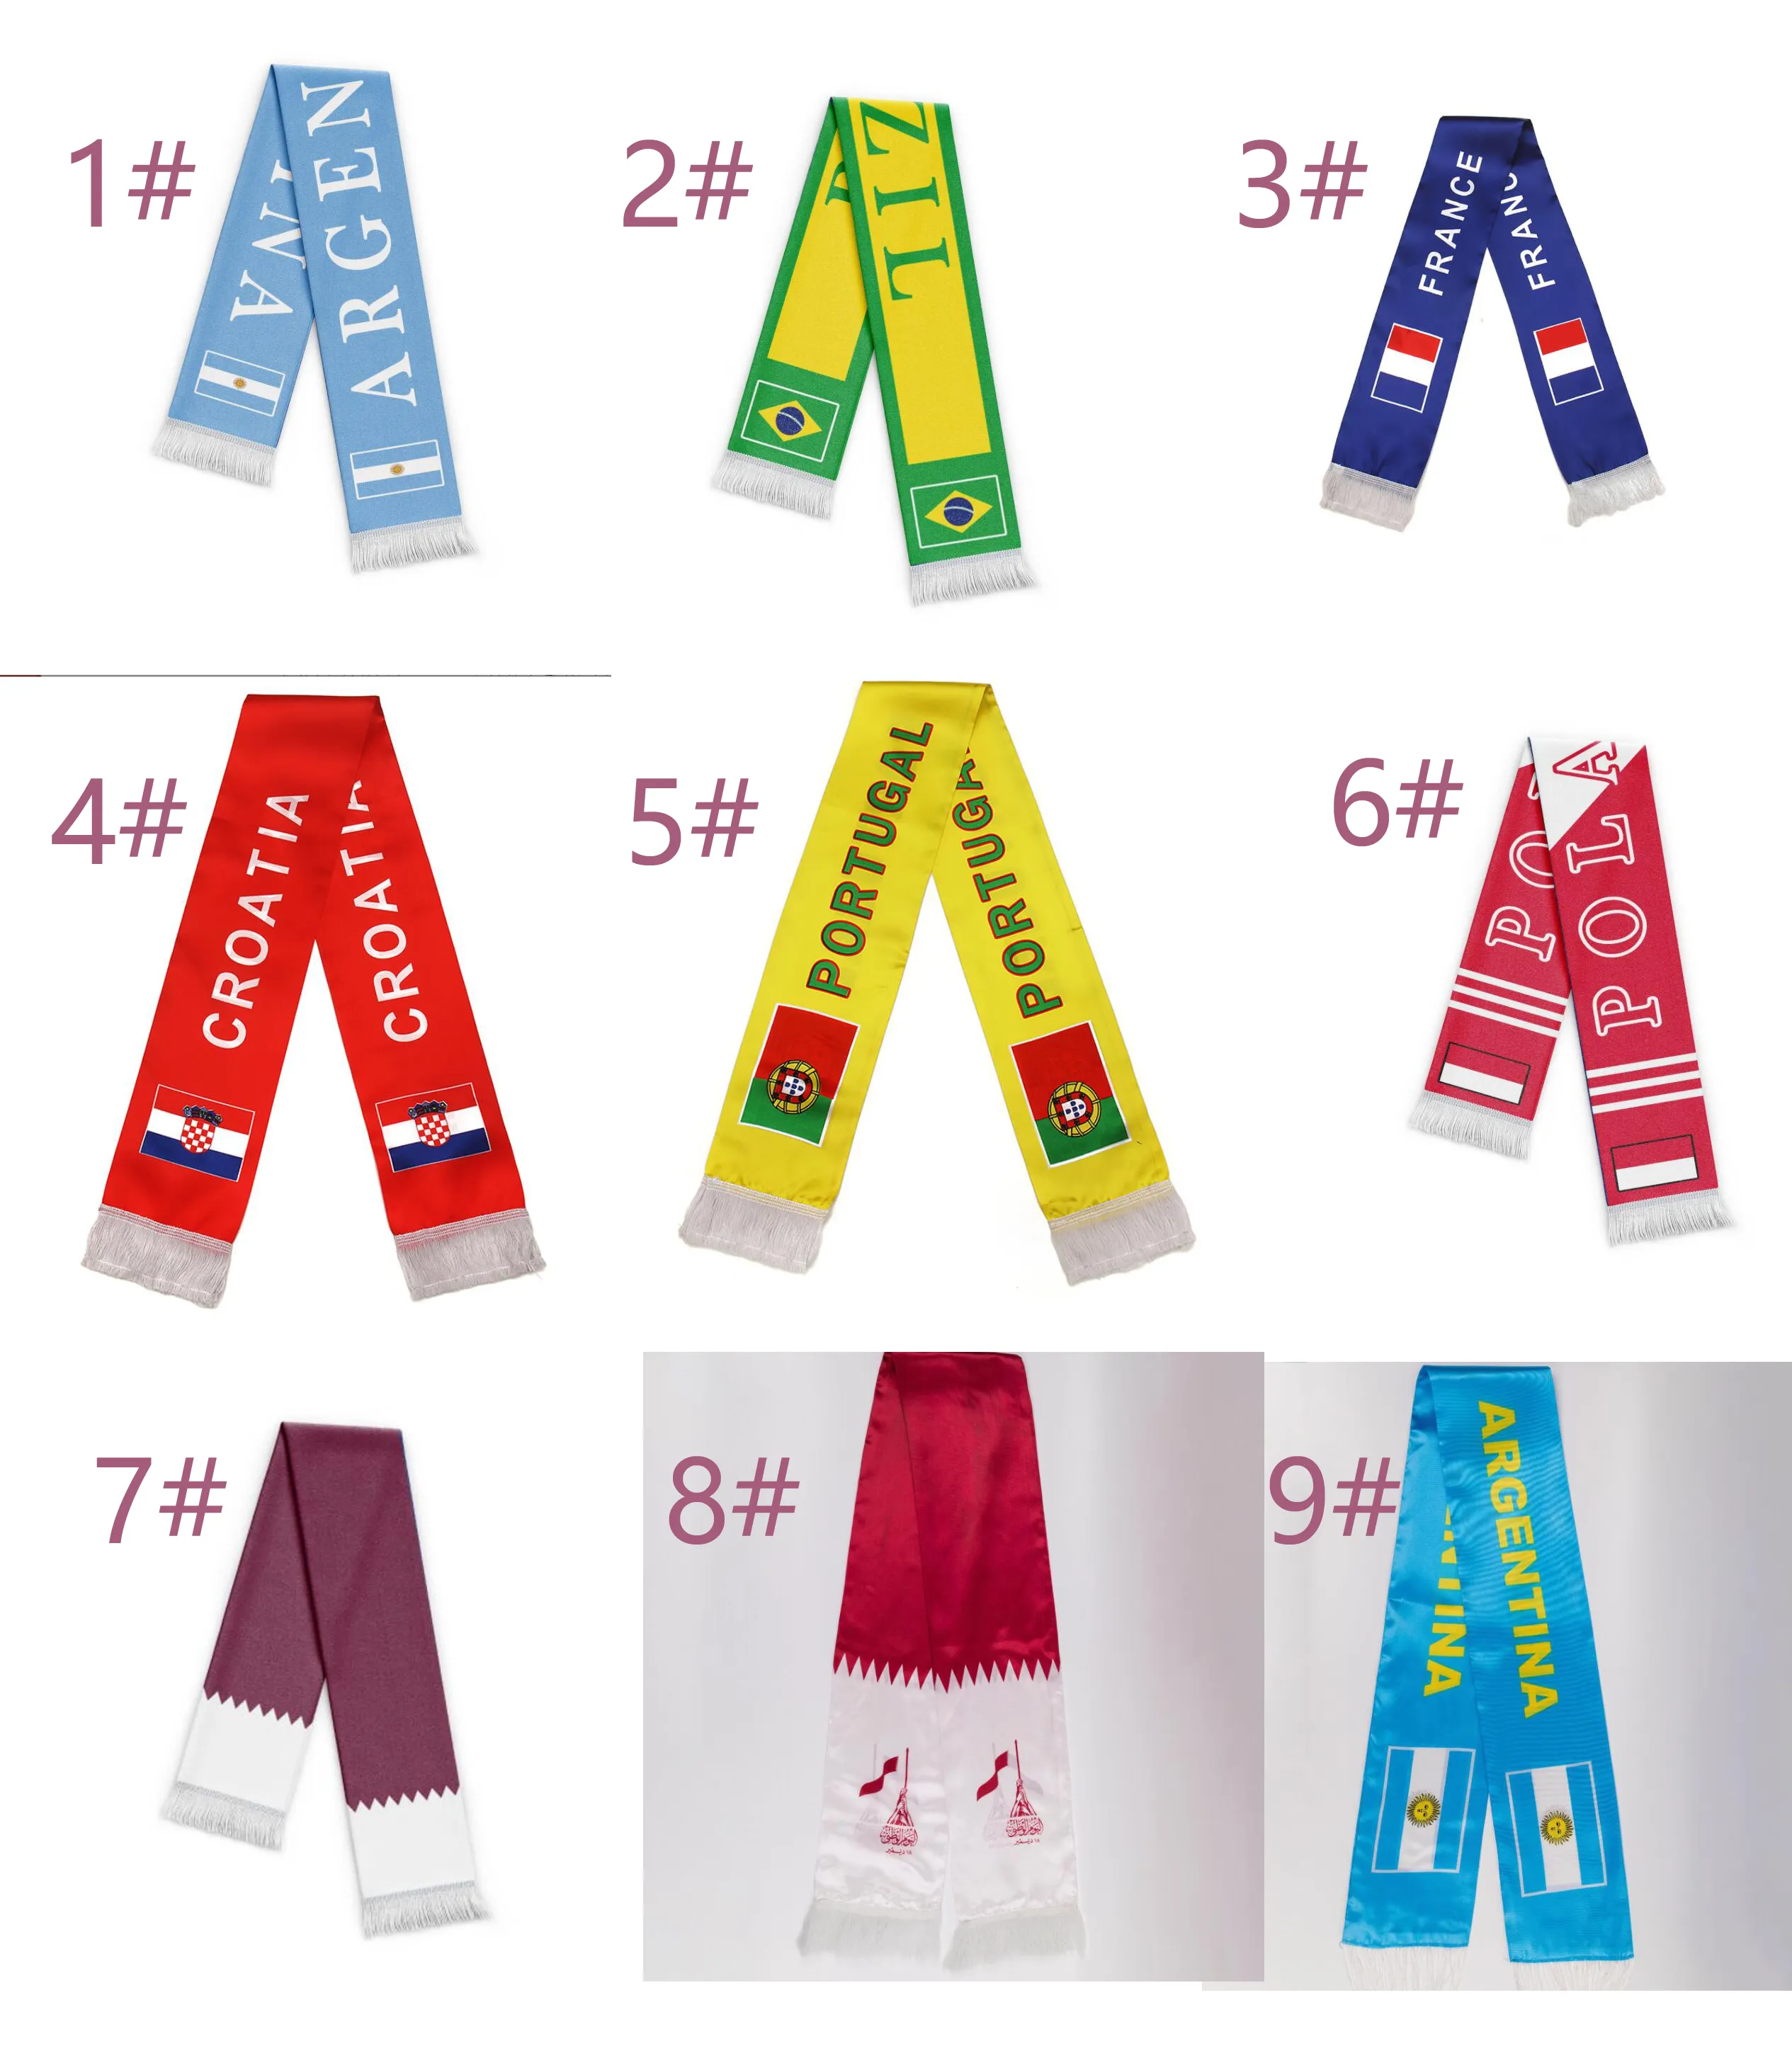 50 PZ UOMO DONNA Tarr Coppa del Mondo Sciarpa 15X135 Coppa del Mondo fan gear stampato nappa tinto mano sciarpe Colore. Sciarpa da calcio